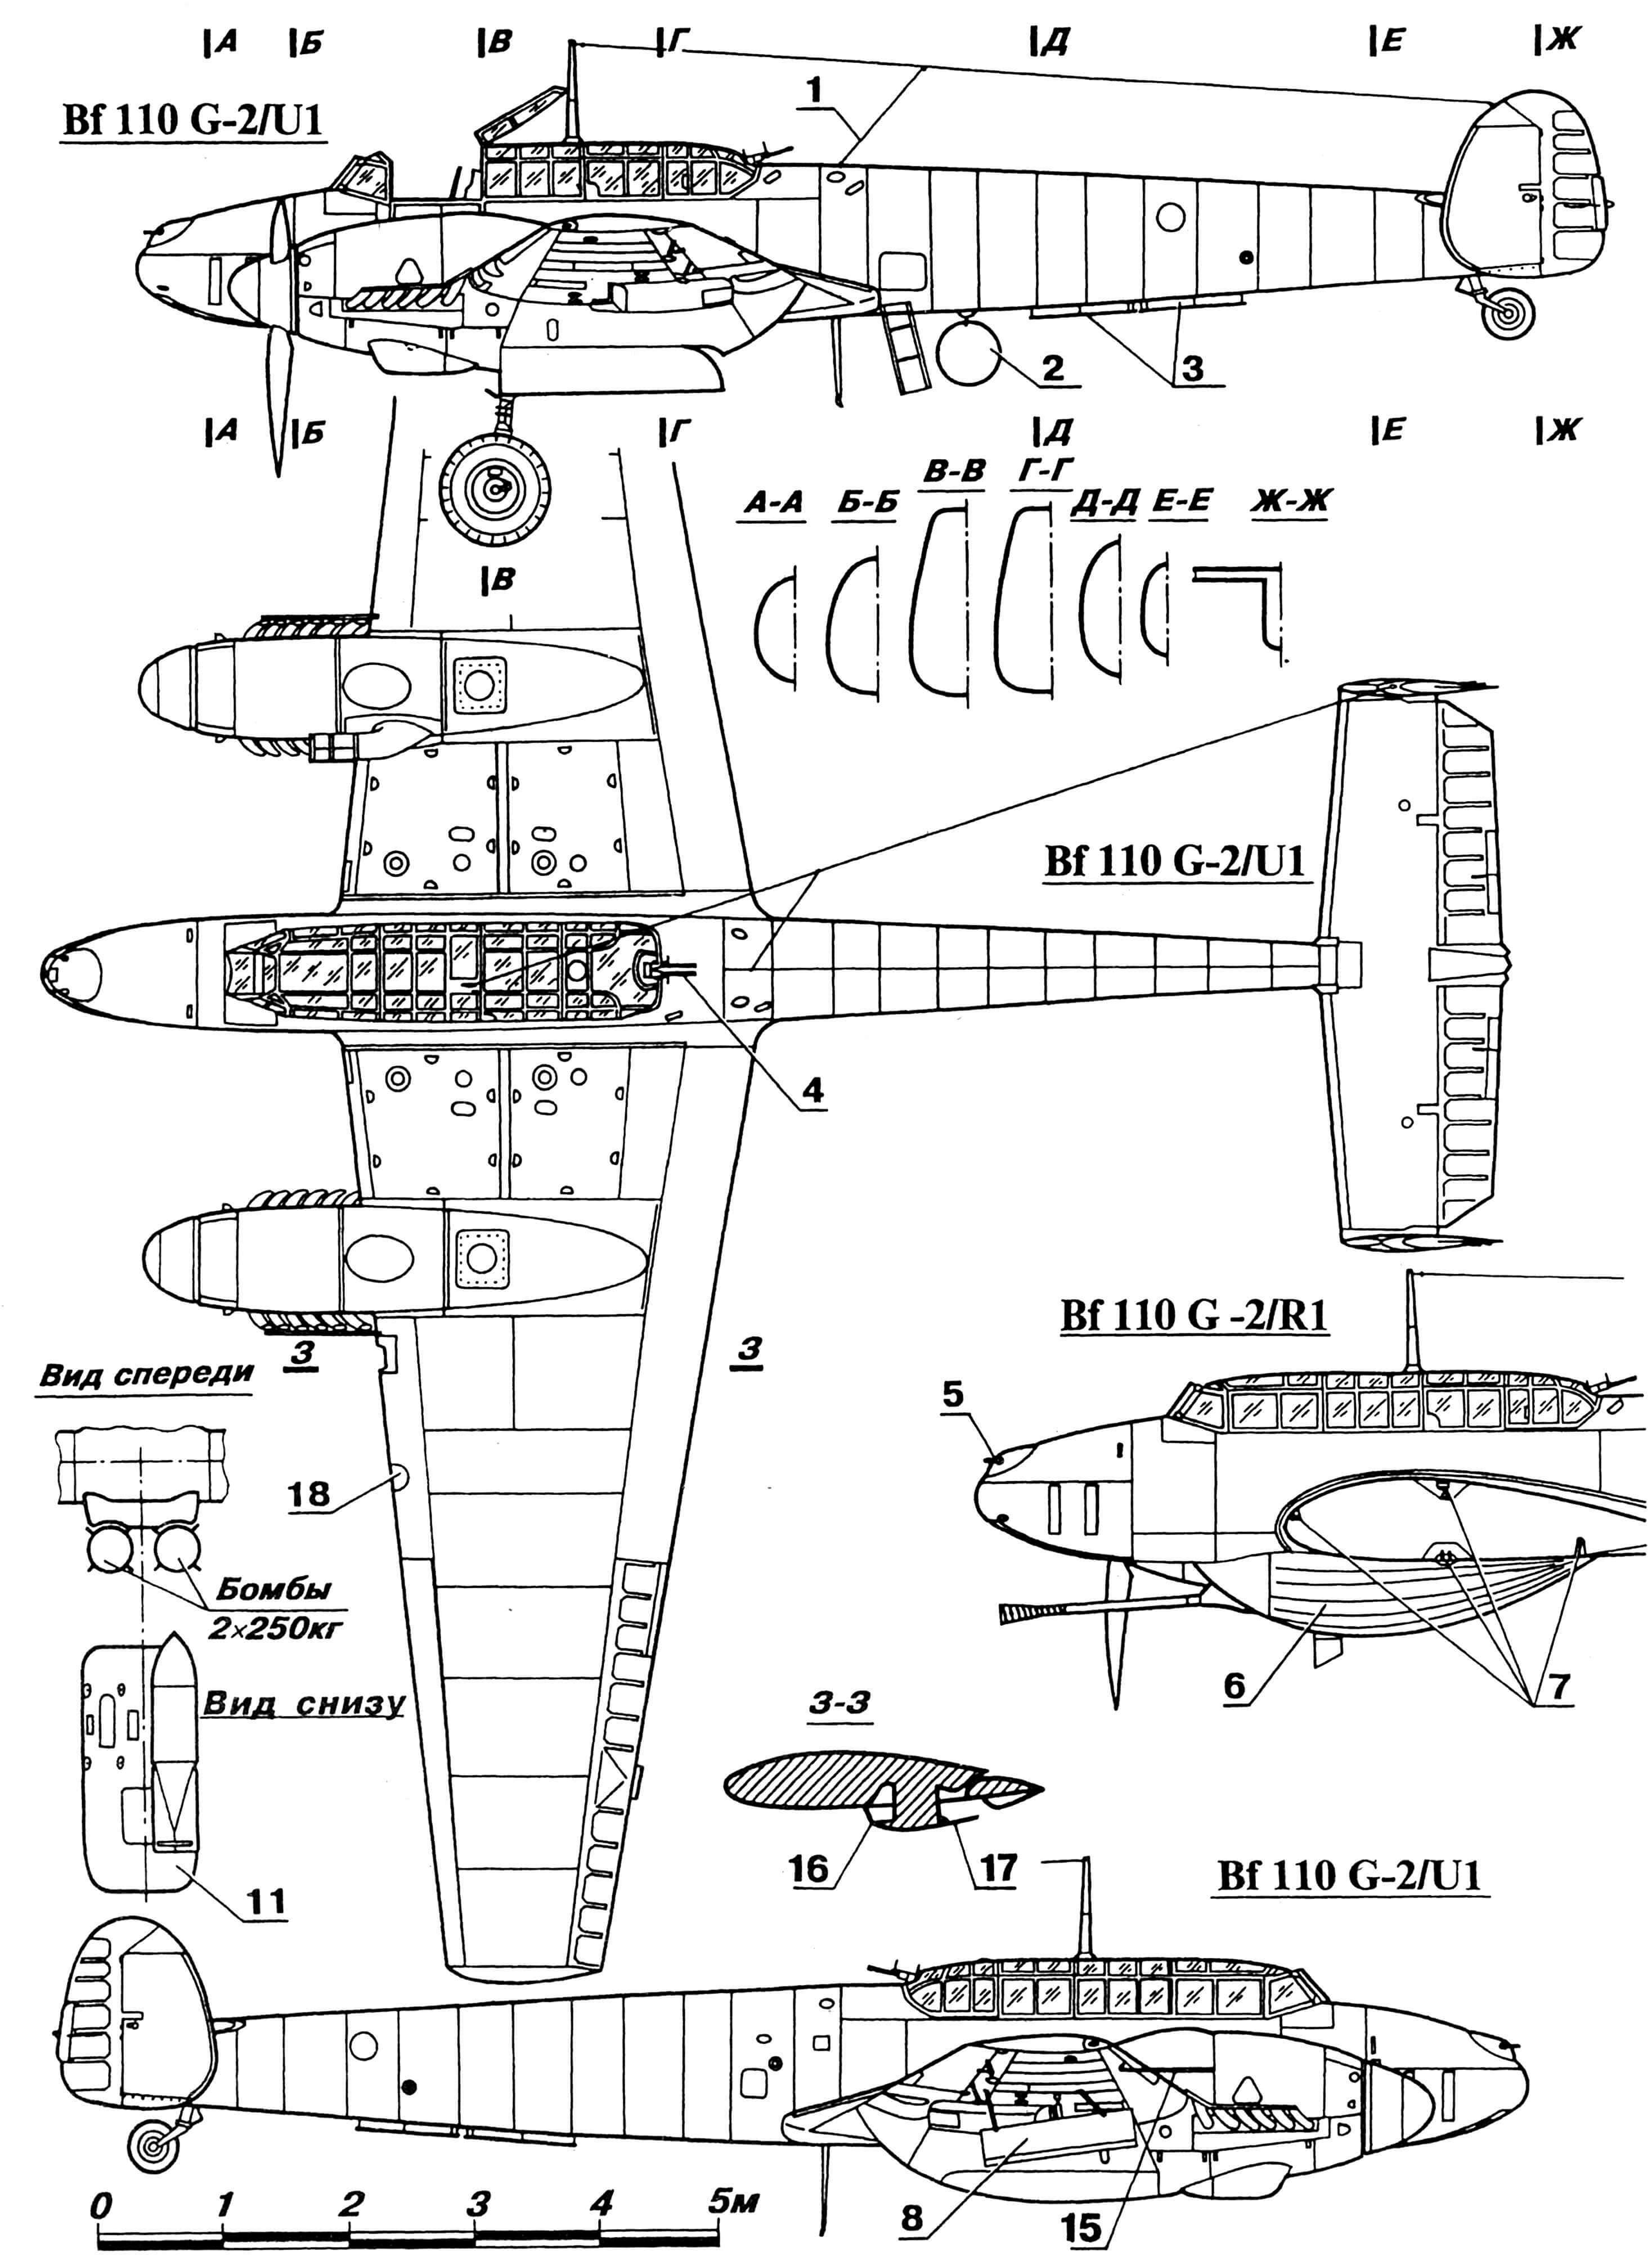 «Мессершмитт» ВШО в модификациях «G-2/U1» — истребитель-бомбардировщик и «G-4» — ночной истребитель-бомбардировщик (значения некоторых индексов модификации: R1 — с пулеметом ВК 3,7 калибром 37 мм в подфюзеляжной гондоле, R3 — с крупнокалиберным пулеметом МК108, R7 — с подвесными топливными баками на 300 л, М2 — с бомбовыми держателями ЕТС 500): 1 — антенна радиостанции FuG10P, 2 — антенна радиопеленгатора Peil GV, 3 — антенна системы FuB 11,4 — пулемет MG FF/M «Schrage Musik», 5 — пулемет МК108, 6 — пулемет ВК 3,7 (37 мм) в гондоле, 7 — узлы стыковки крыла с фюзеляжем, 8 — пусковая ракетная установка Wfr.Gr.21 или подвеска дополнительного топливного бака на 300 л, 9 — антенны радиовысотомера FuG101, 10 — амбразуры пулеметов MG 151/20, 11 — бомбовый держатель ETC 500/IXb с бомбой, 12 — выпускная тросовая антенна FuG 10Р, 13 — антенна SN2 и С1 радиолокатора, 14 — подкрыльевой топливный бак, 15 — трубка Пито, 16 — гликолиевый радиатор системы охлаждения двигателя, 17 — управляемая створка радиатора, 18 — взлетно-посадочная фара.